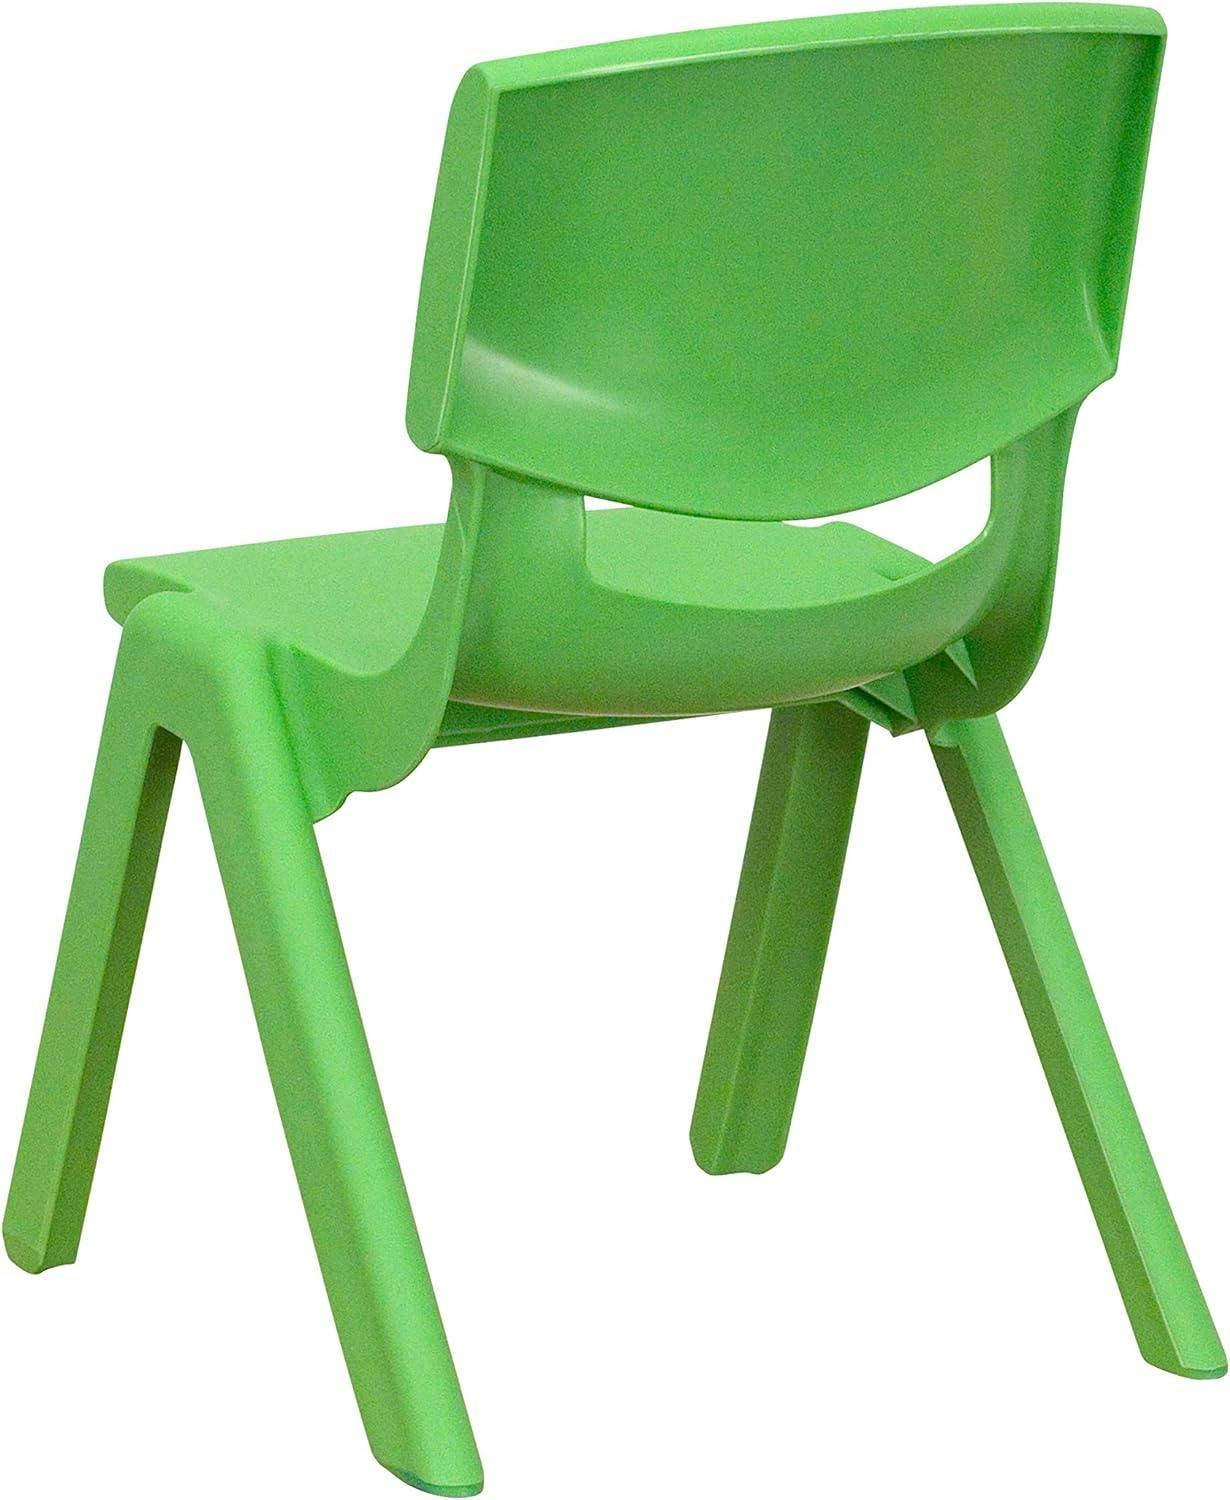 Energetic Green Lightweight Stackable Toddler School Chair